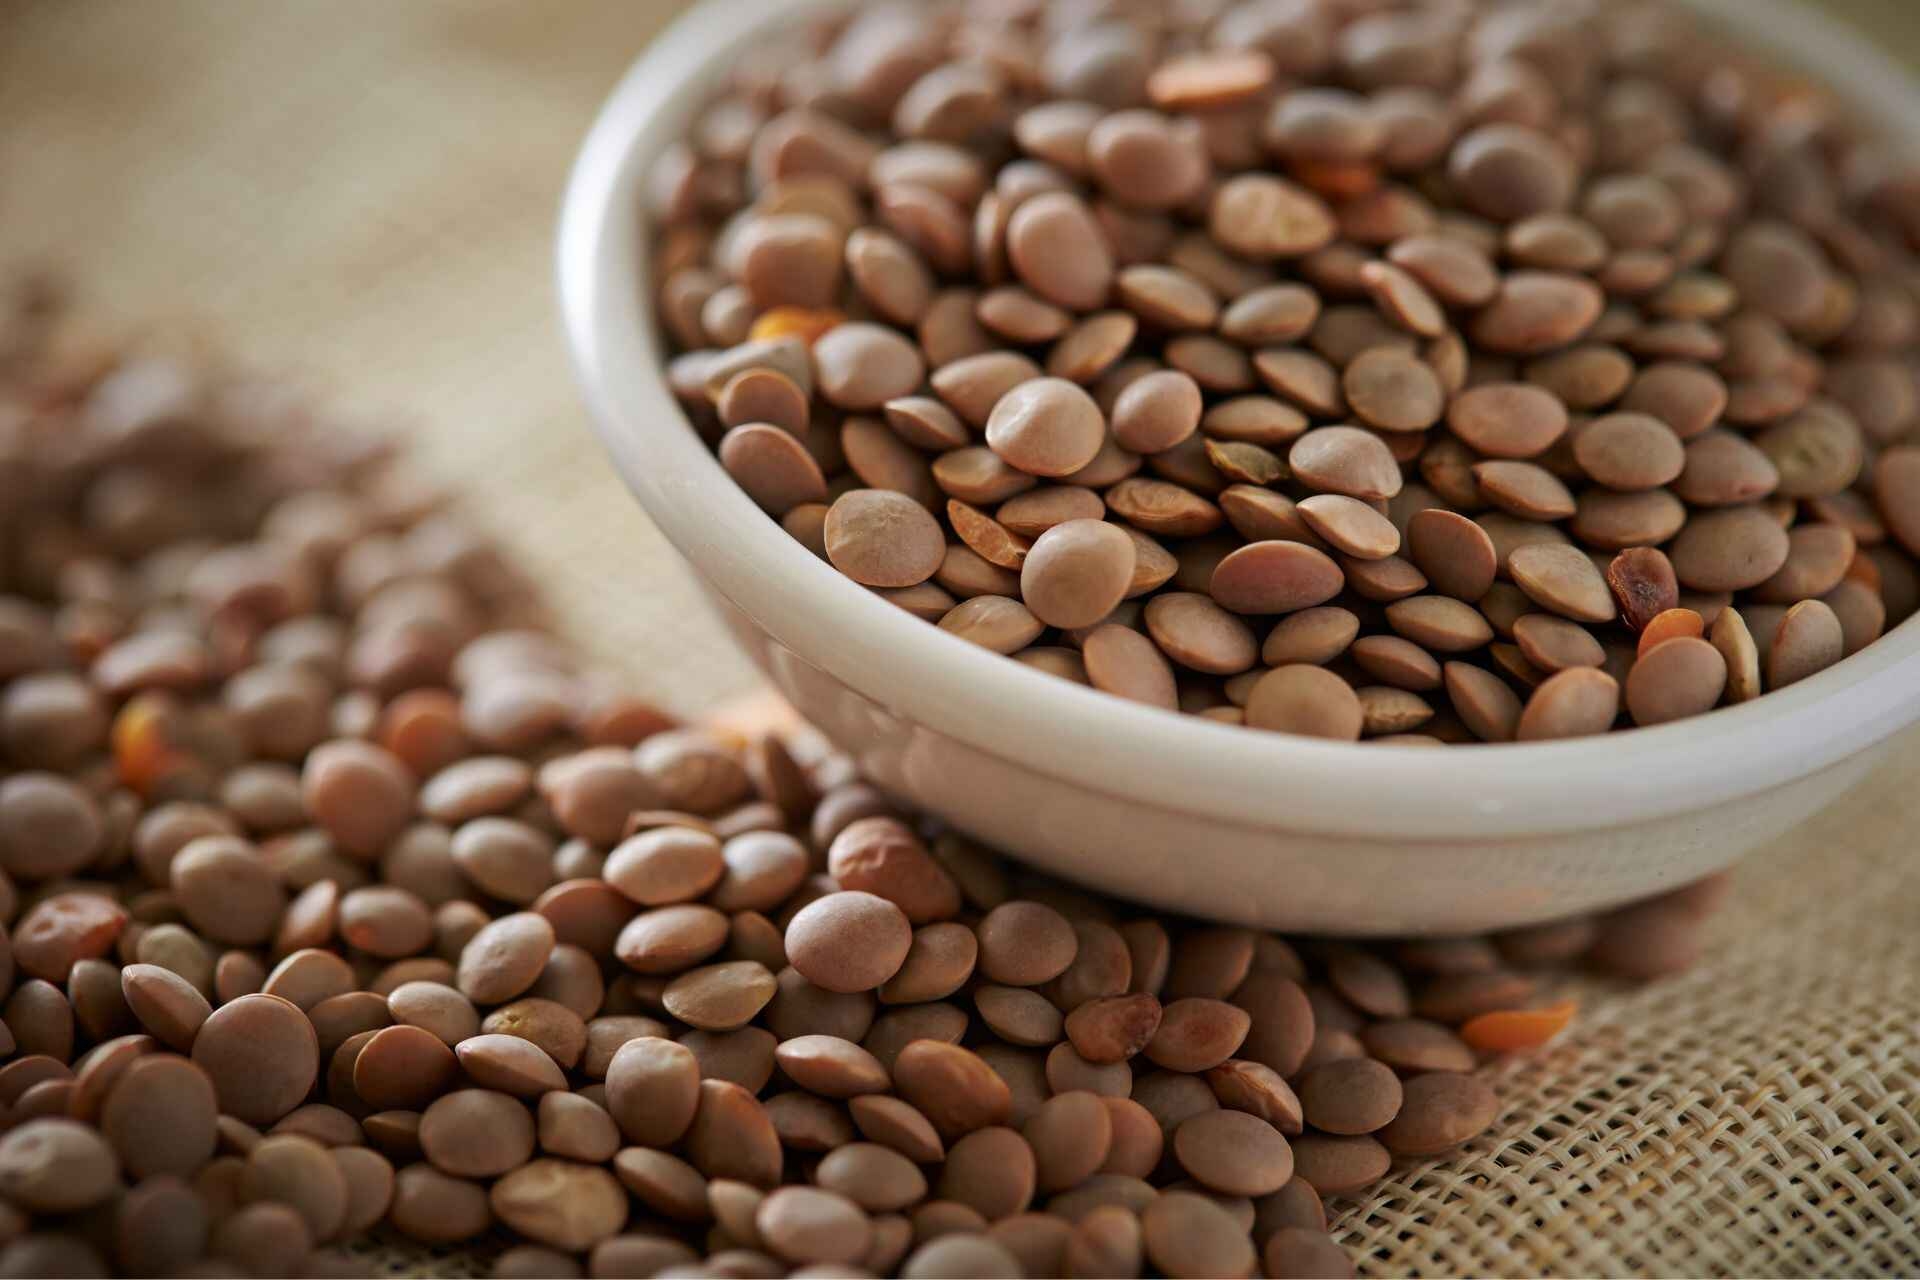 Dieta personalizada: as lentilhas são ricas em fibras, proteínas e ferro e são adequadas para todos